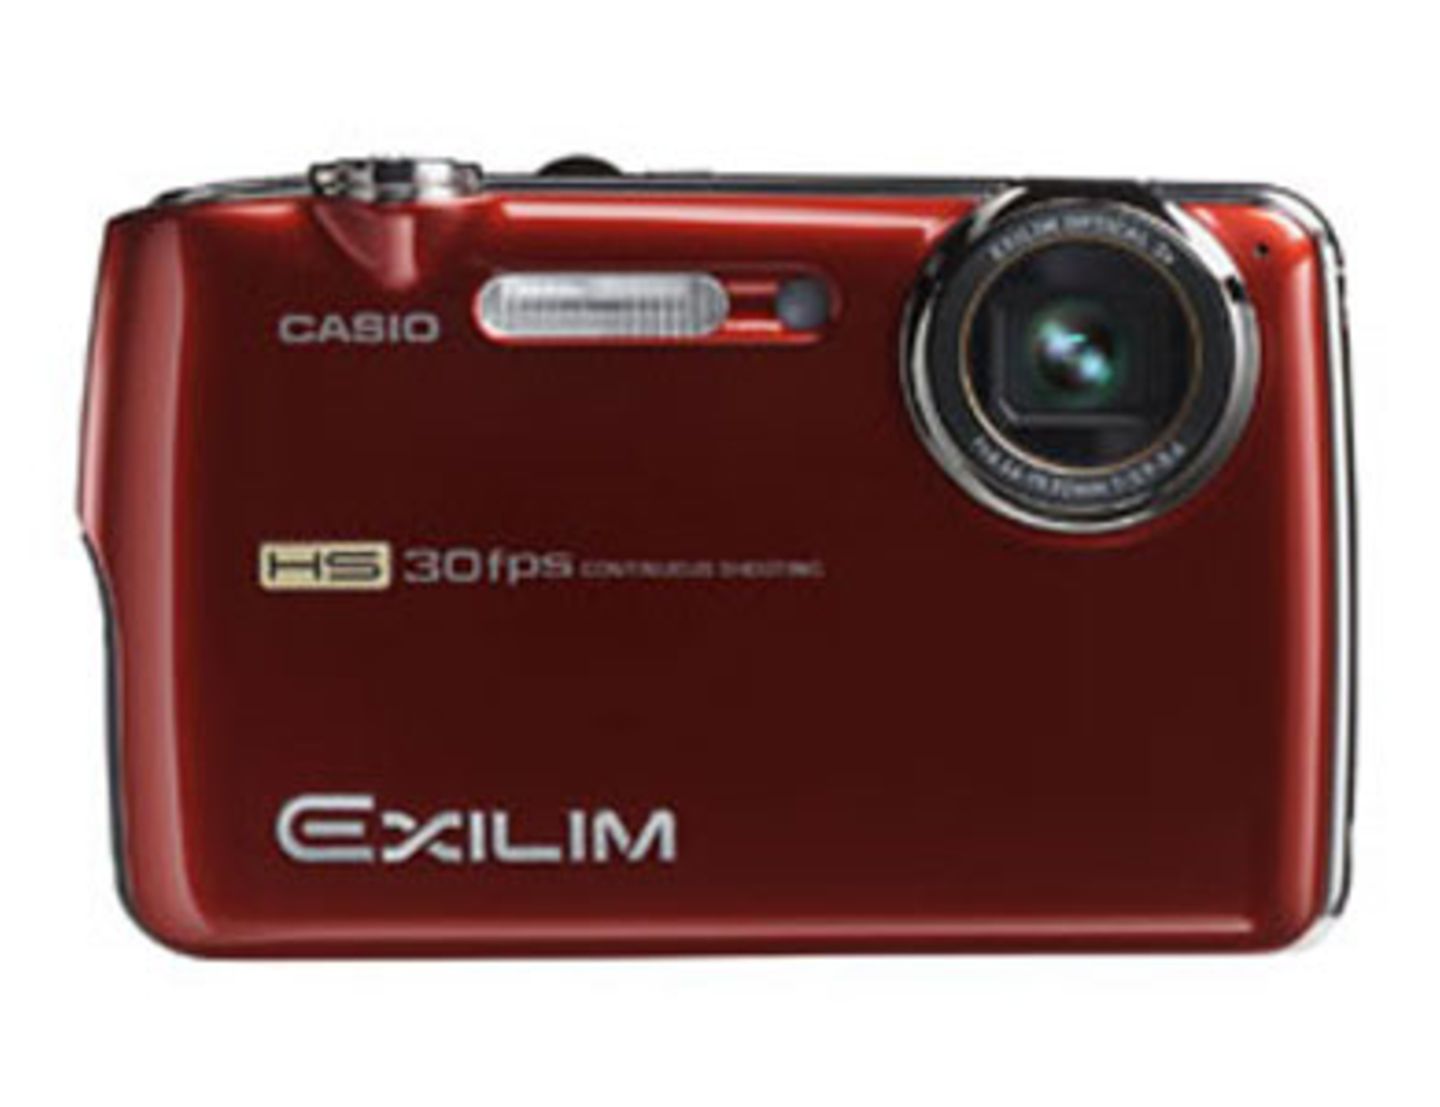 EXILIM EX-FS10 ist das Highspeed-Modell der Digitalkameras: Serienbild-Funktion mit 30 Fotos pro Sekunde sowie schnelle Filmaufnahmen mit bis zu 1.000 Bildern pro Sekunde. Das trendige Design bekommt ihr in den Farben schwarz, weiß, blau und rot. Um 350 Euro. Mehr Informationen findet ihr bei Exilim.